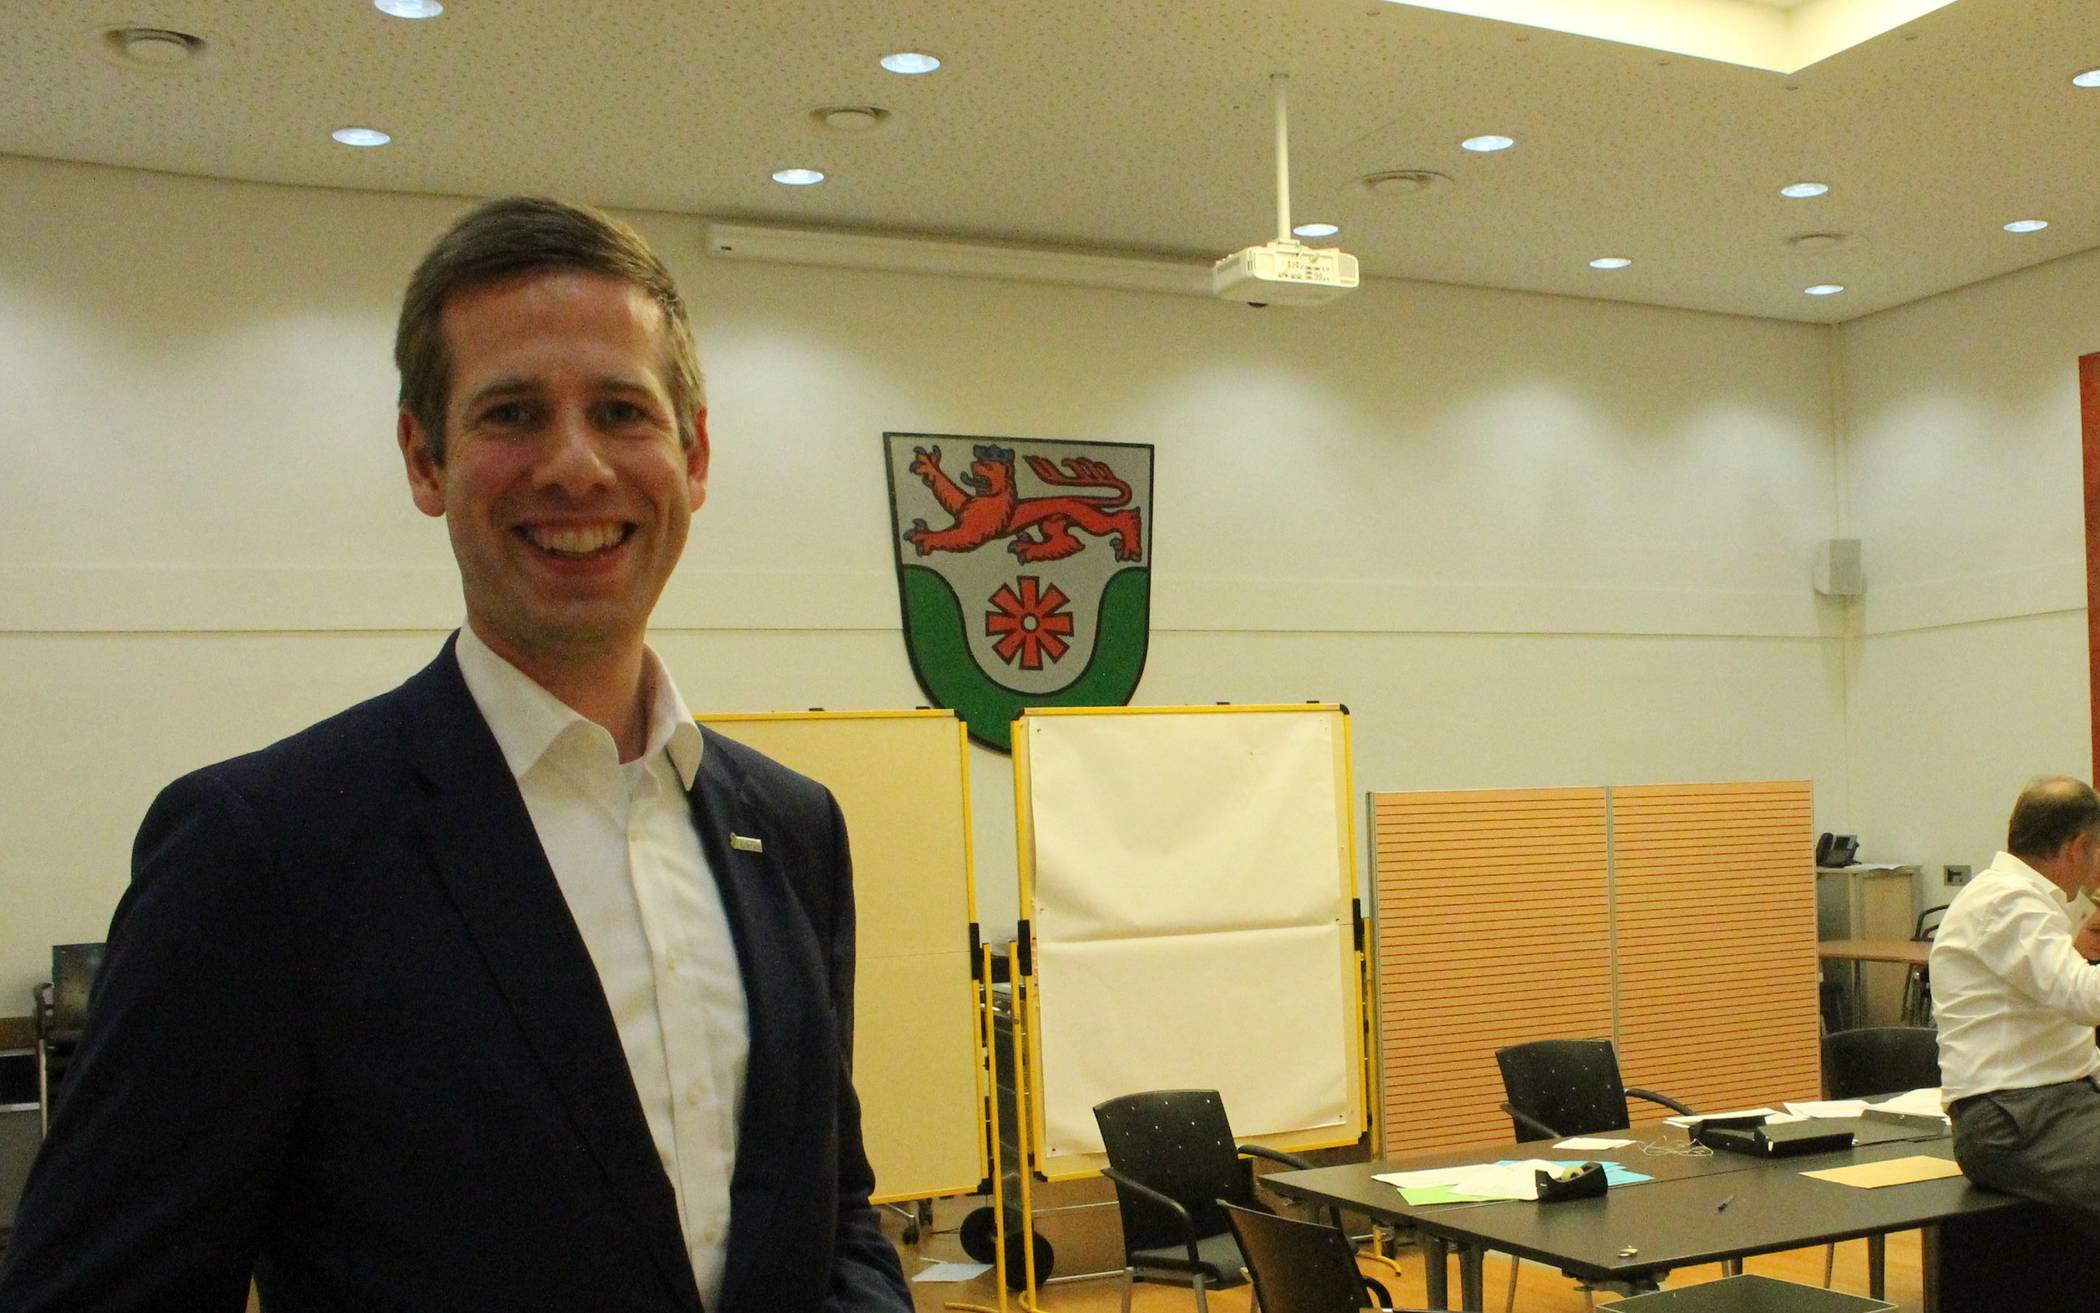  Der neue (alte) Bürgermeister von Erkrath, Christoph Schultz, am Wahlabend im Rathaus. Die Freude über das Ergebnis ist ihm deutlich ins Gesicht geschrieben. 